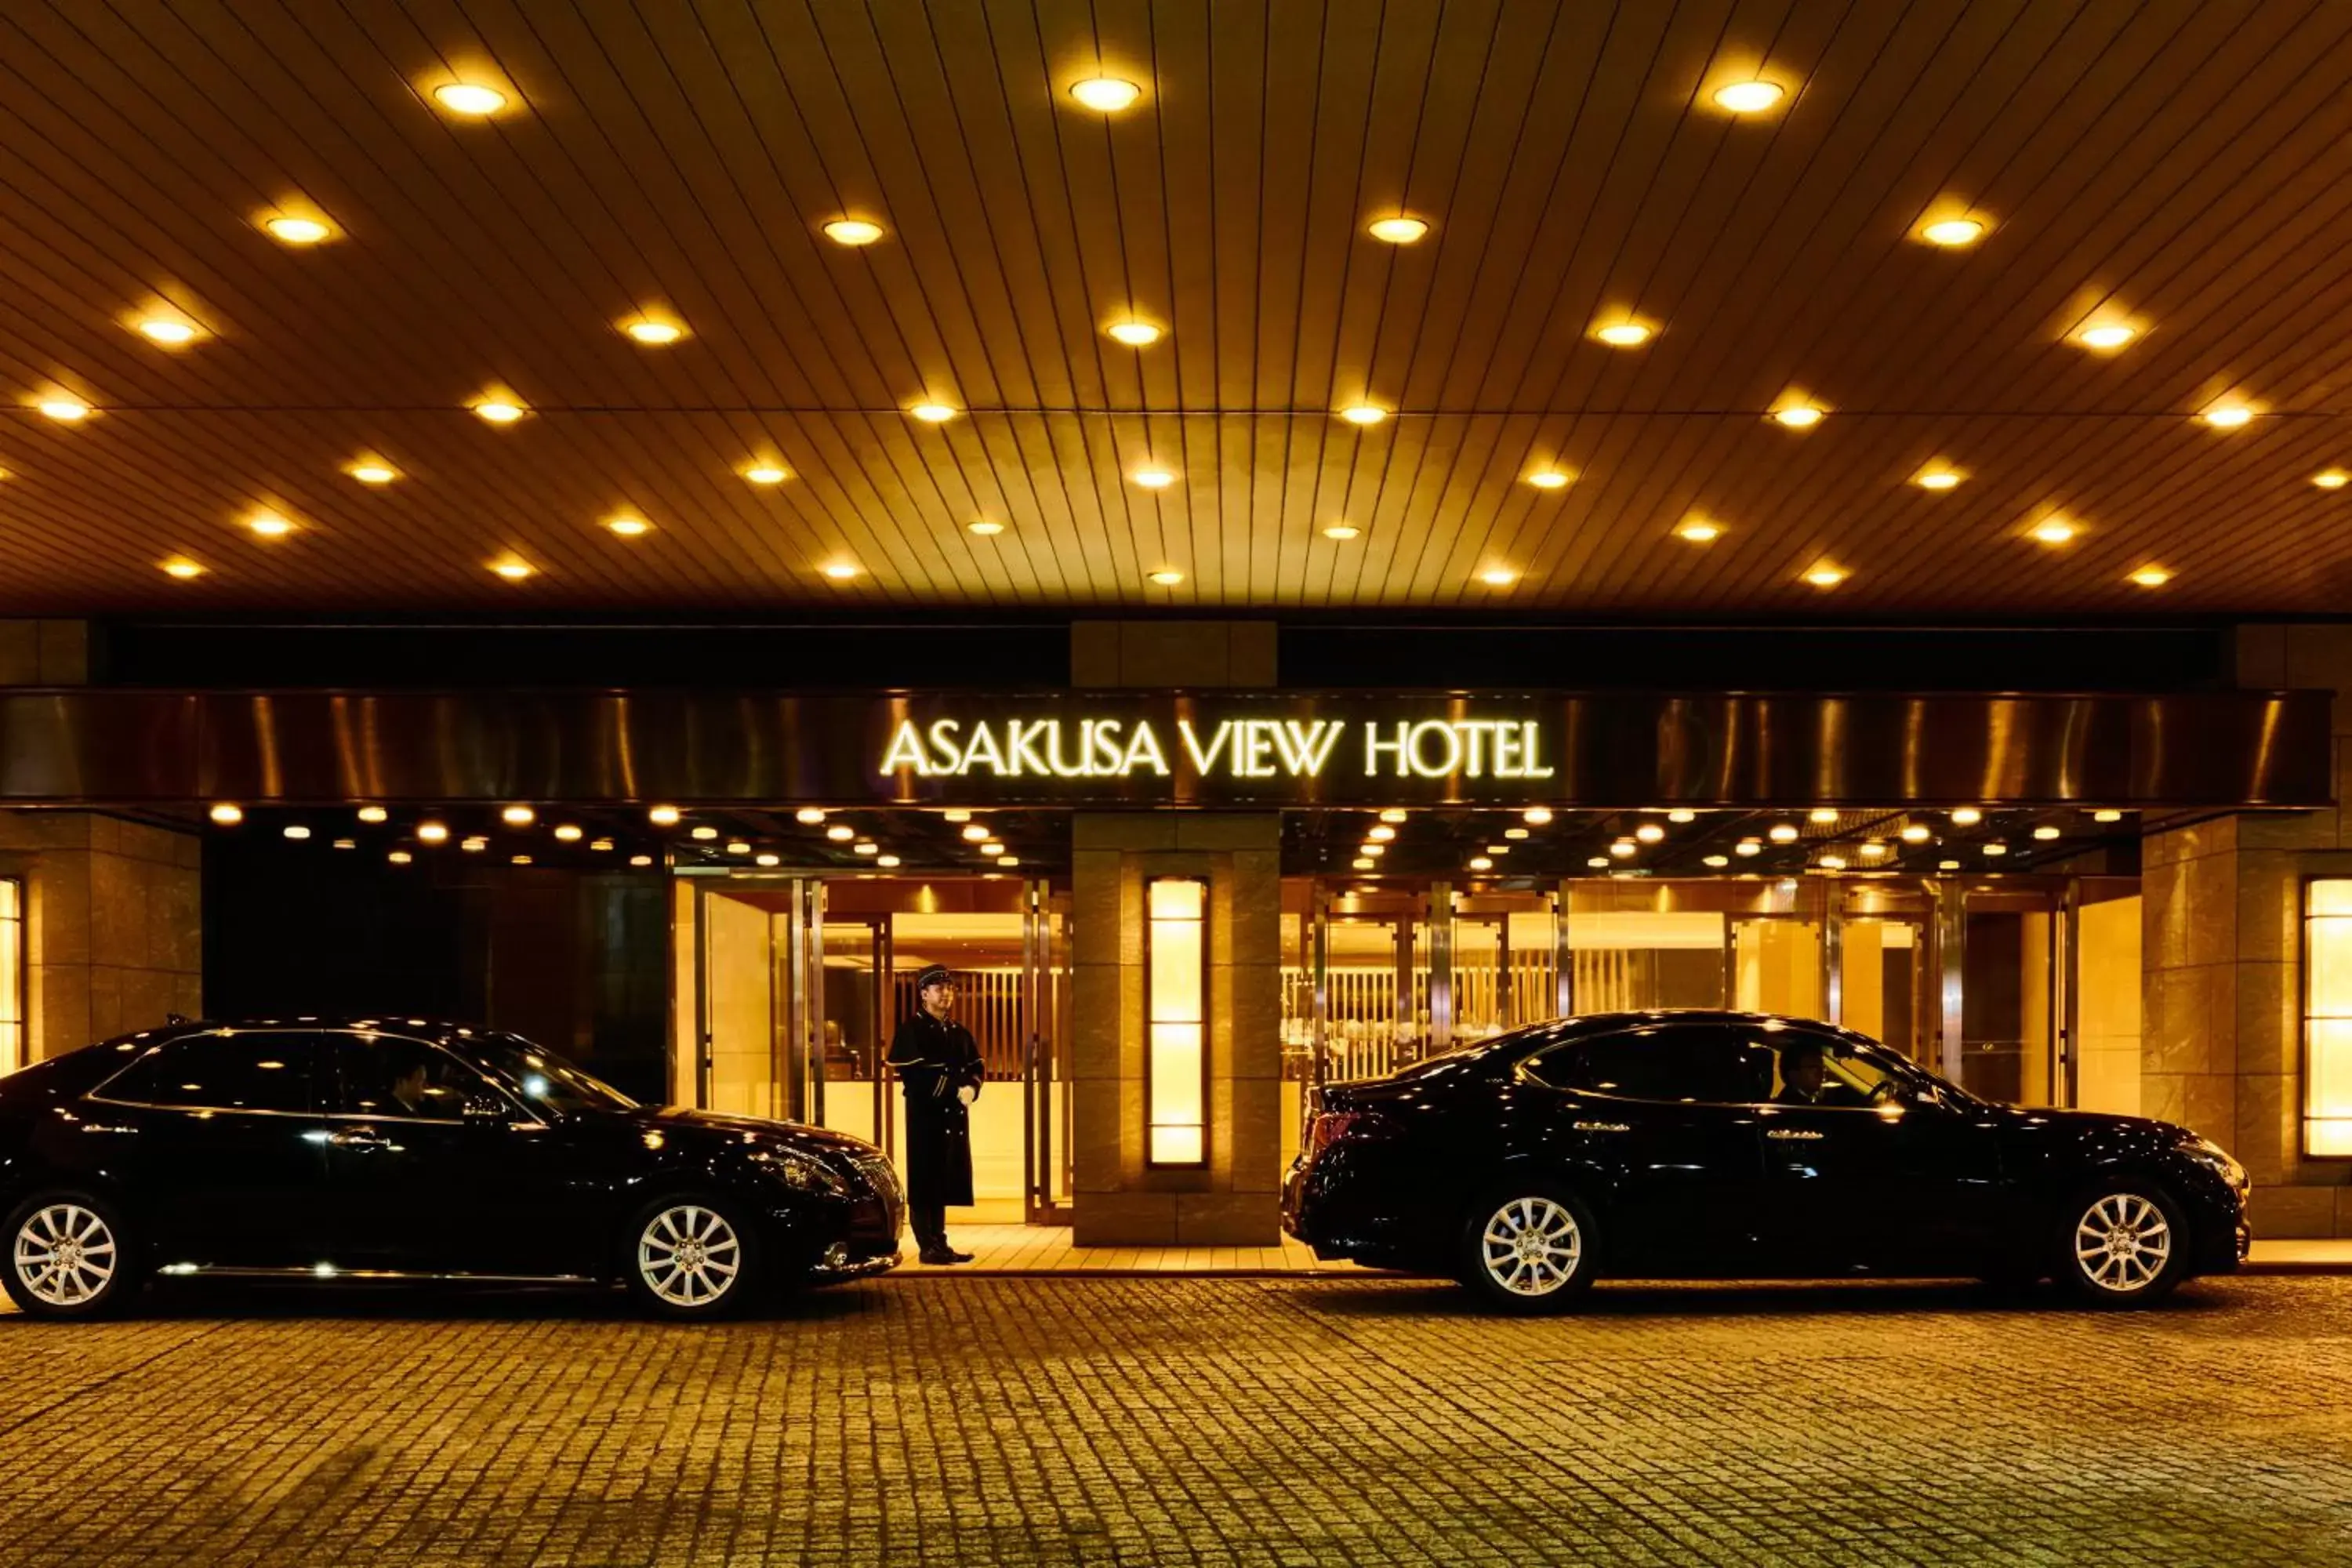 Facade/entrance in Asakusa View Hotel